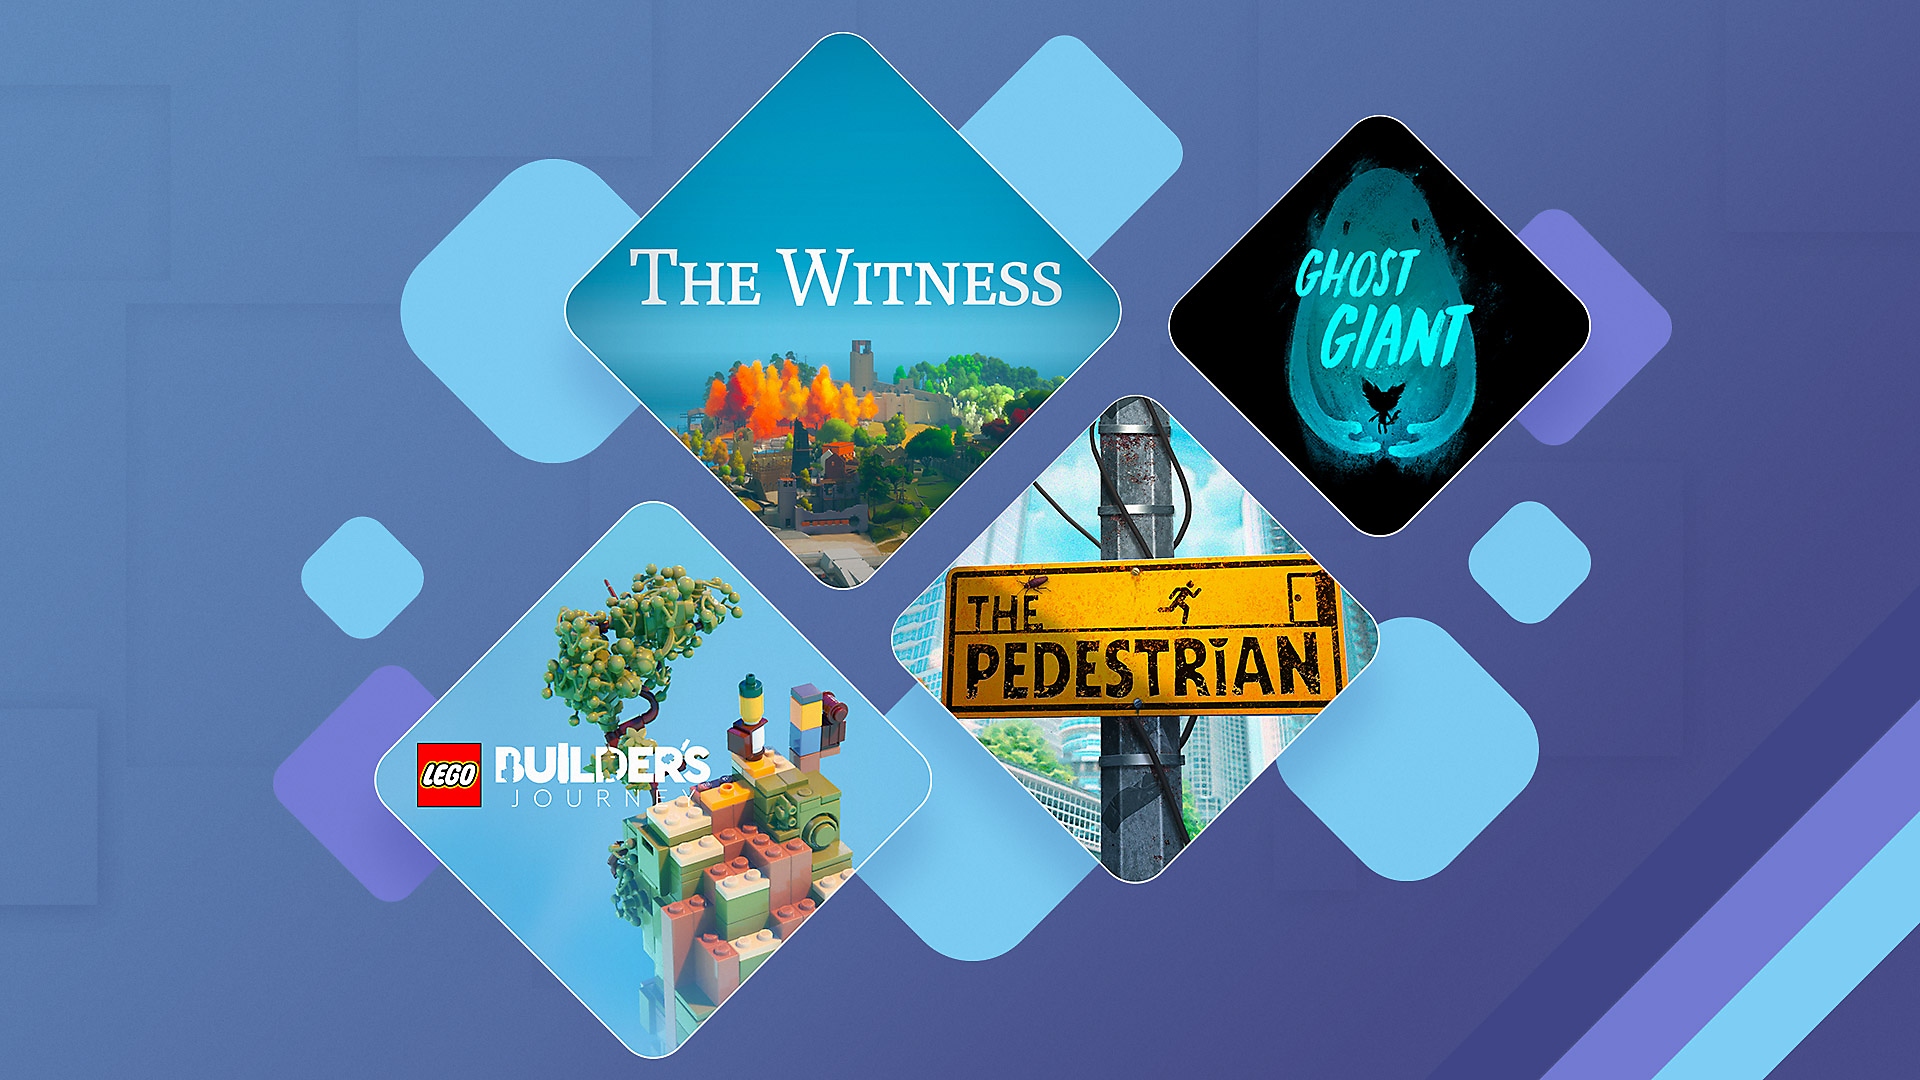 Les meilleurs jeux de réflexion sur PS4 et PS5 - Illustration promotionnelle montrant The Witness, Ghost Giant, Lego Builder's Journey et The Pedestrian.